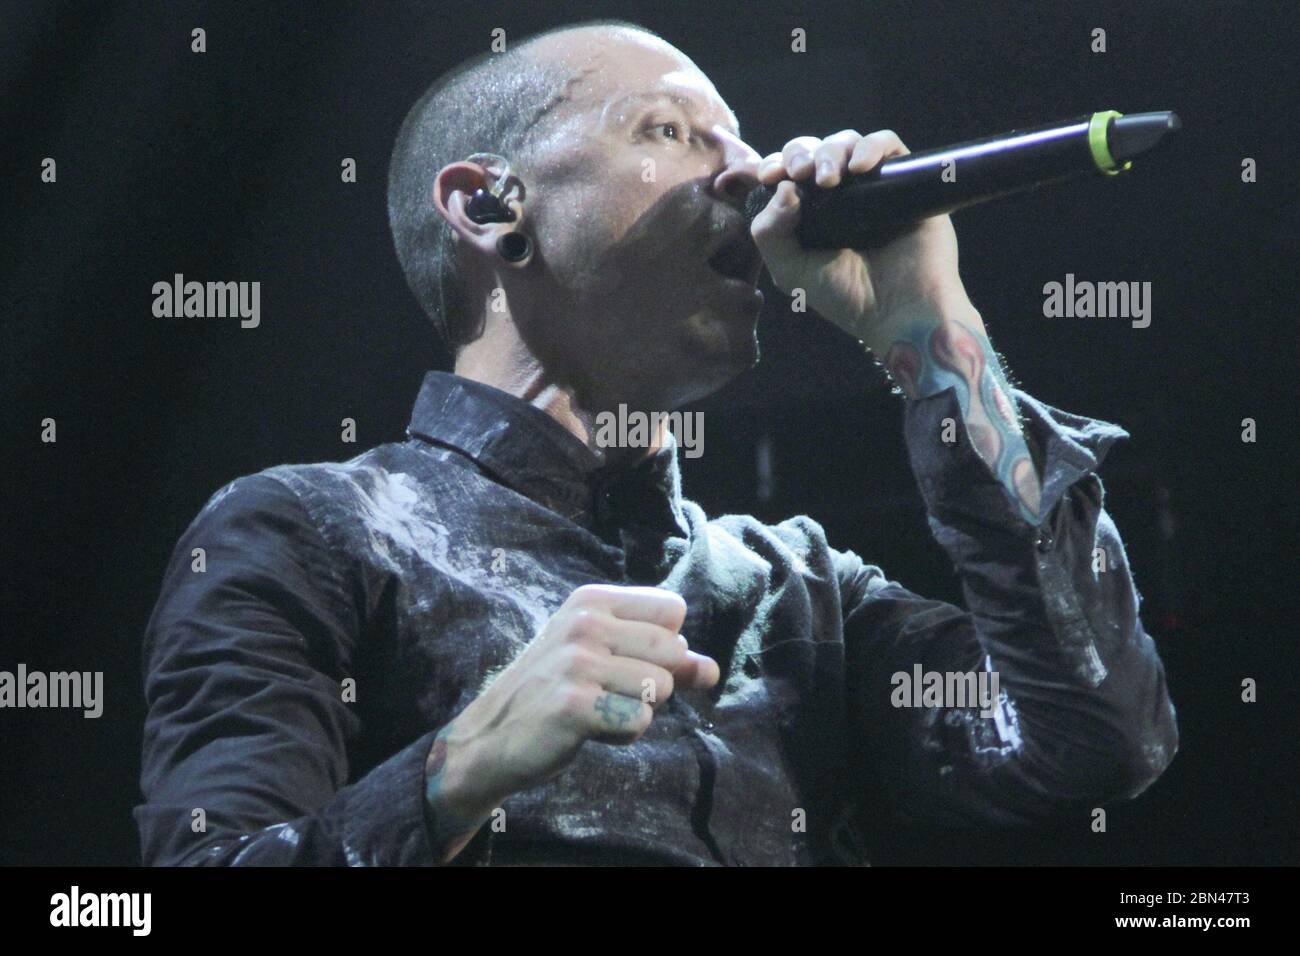 RIO DE JANEIRO, 08.10.2012: Linkin Park performs at the Citibank Hall in Rio de Janeiro (Néstor J. Beremblum / Alamy News) Stock Photo